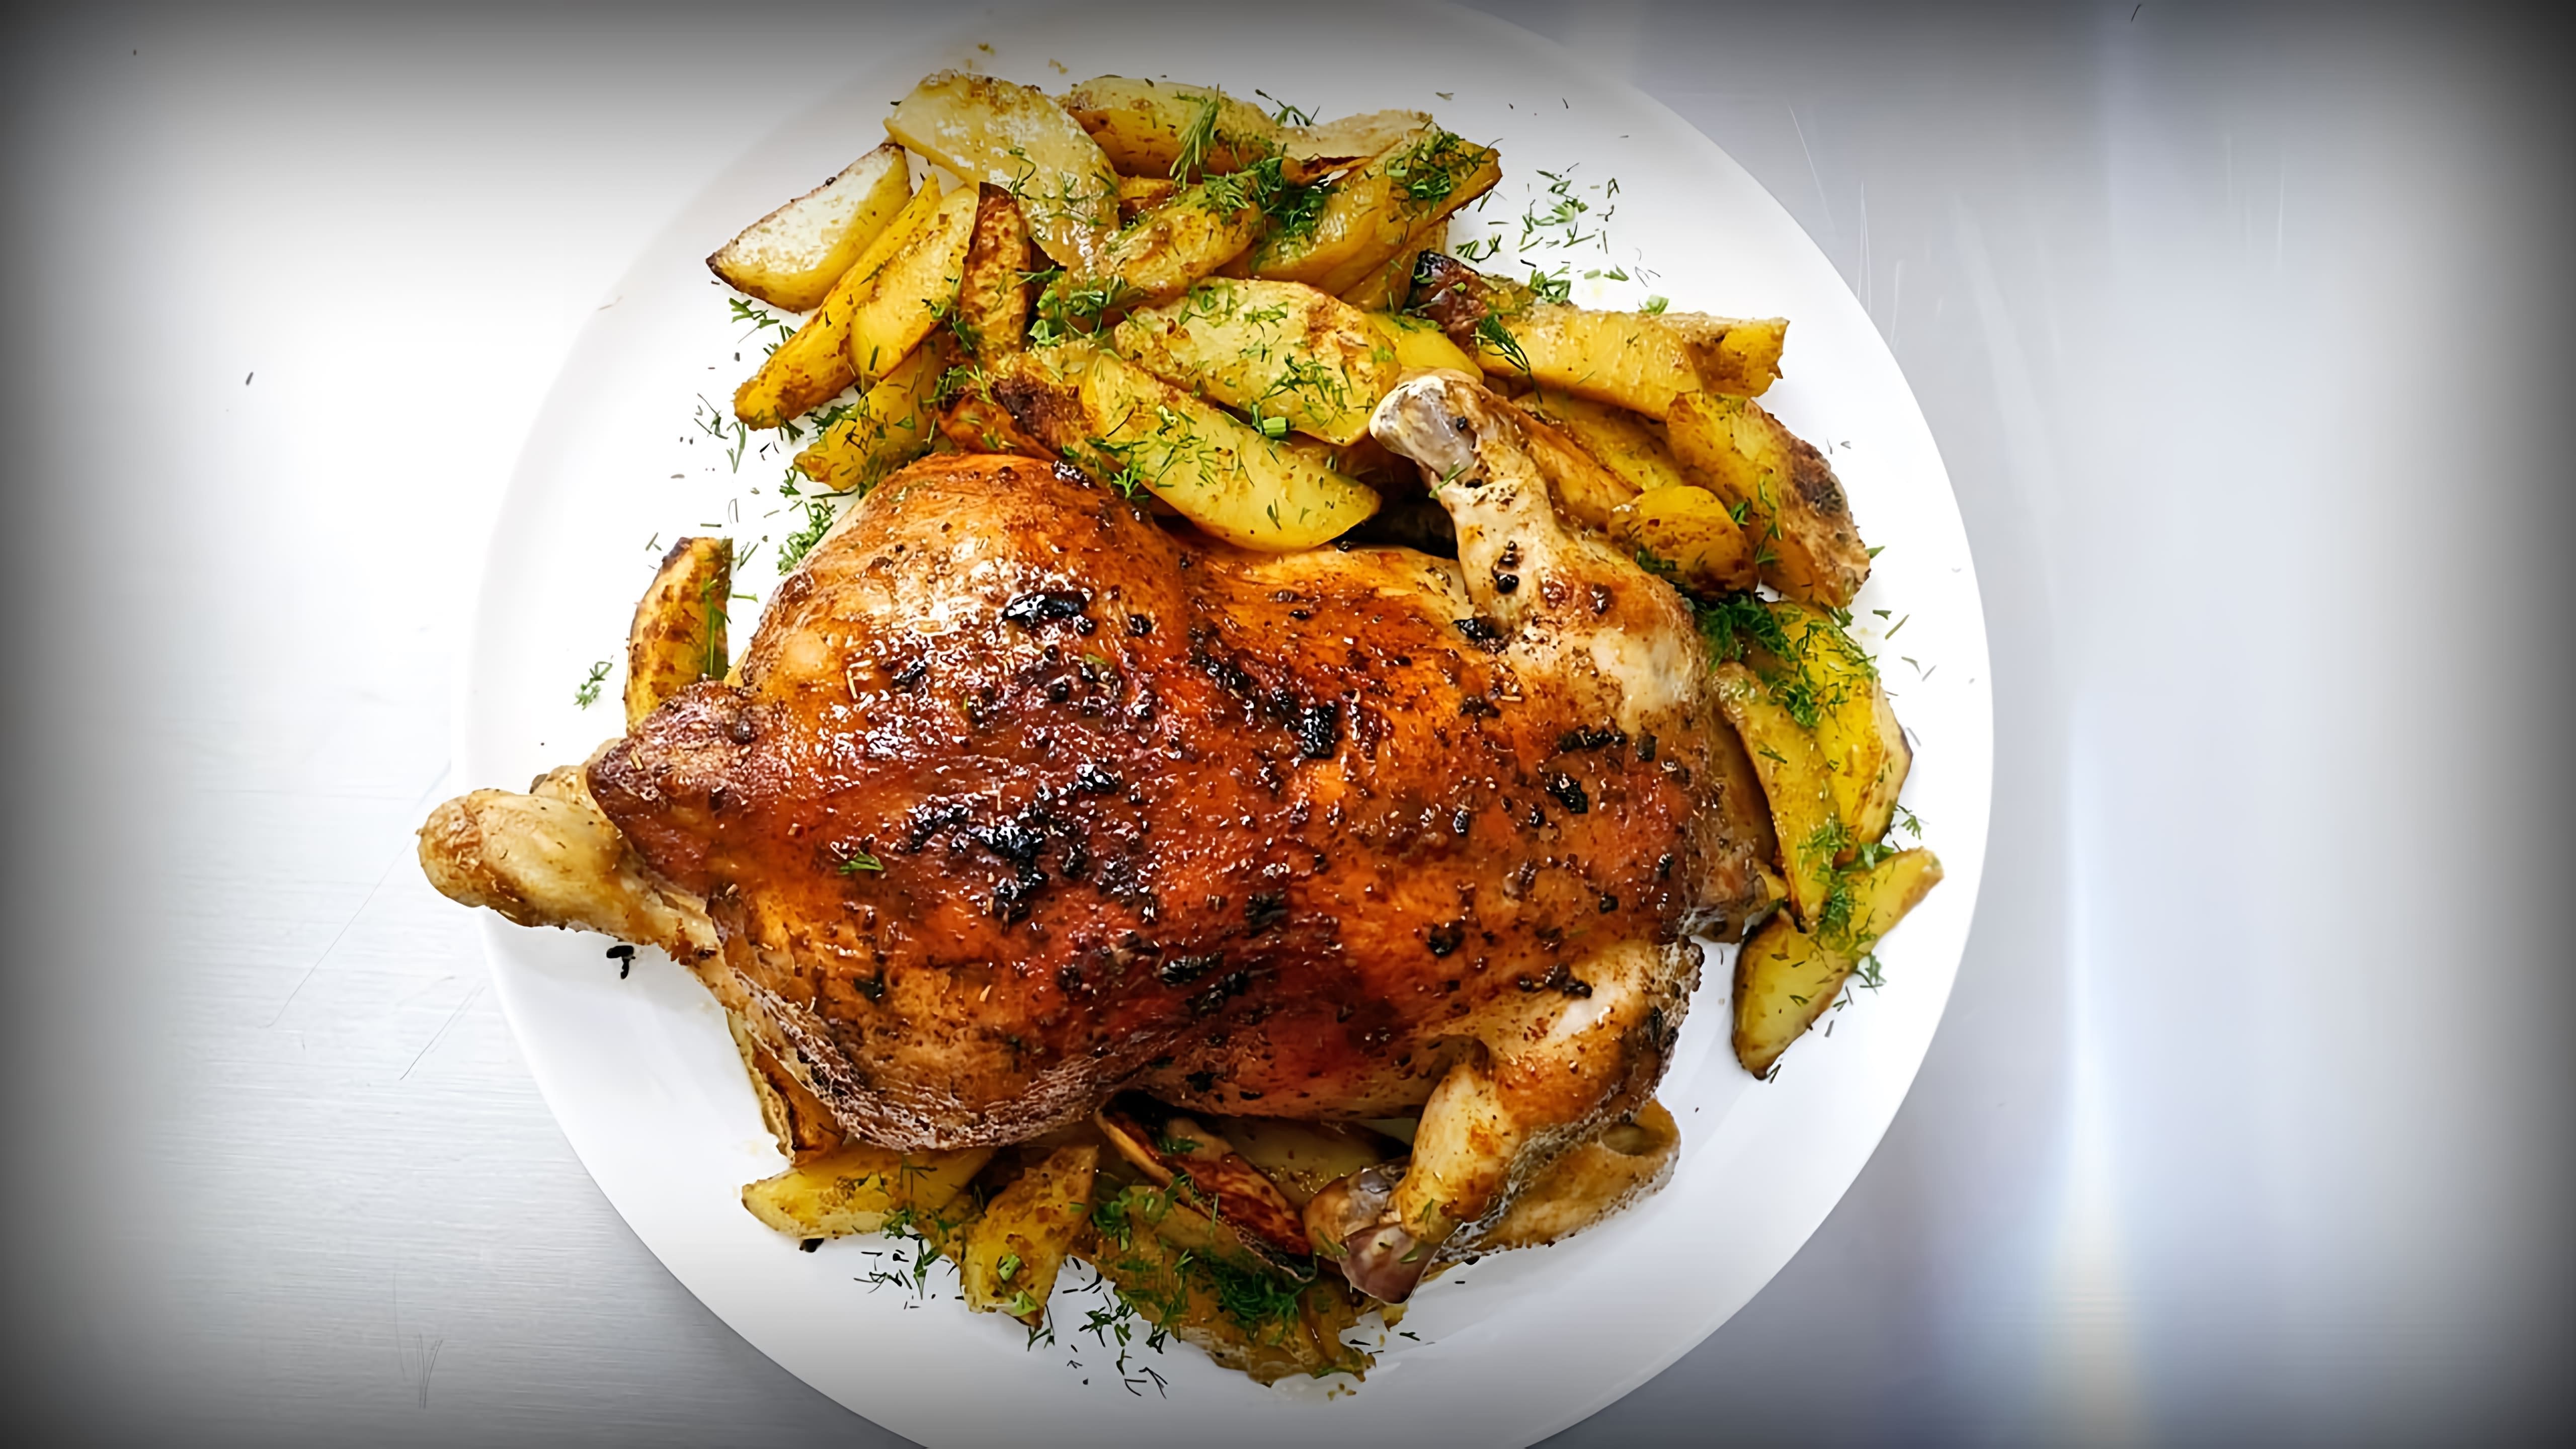 В этом видео показан рецепт приготовления курицы в духовке с картошкой по-деревенски